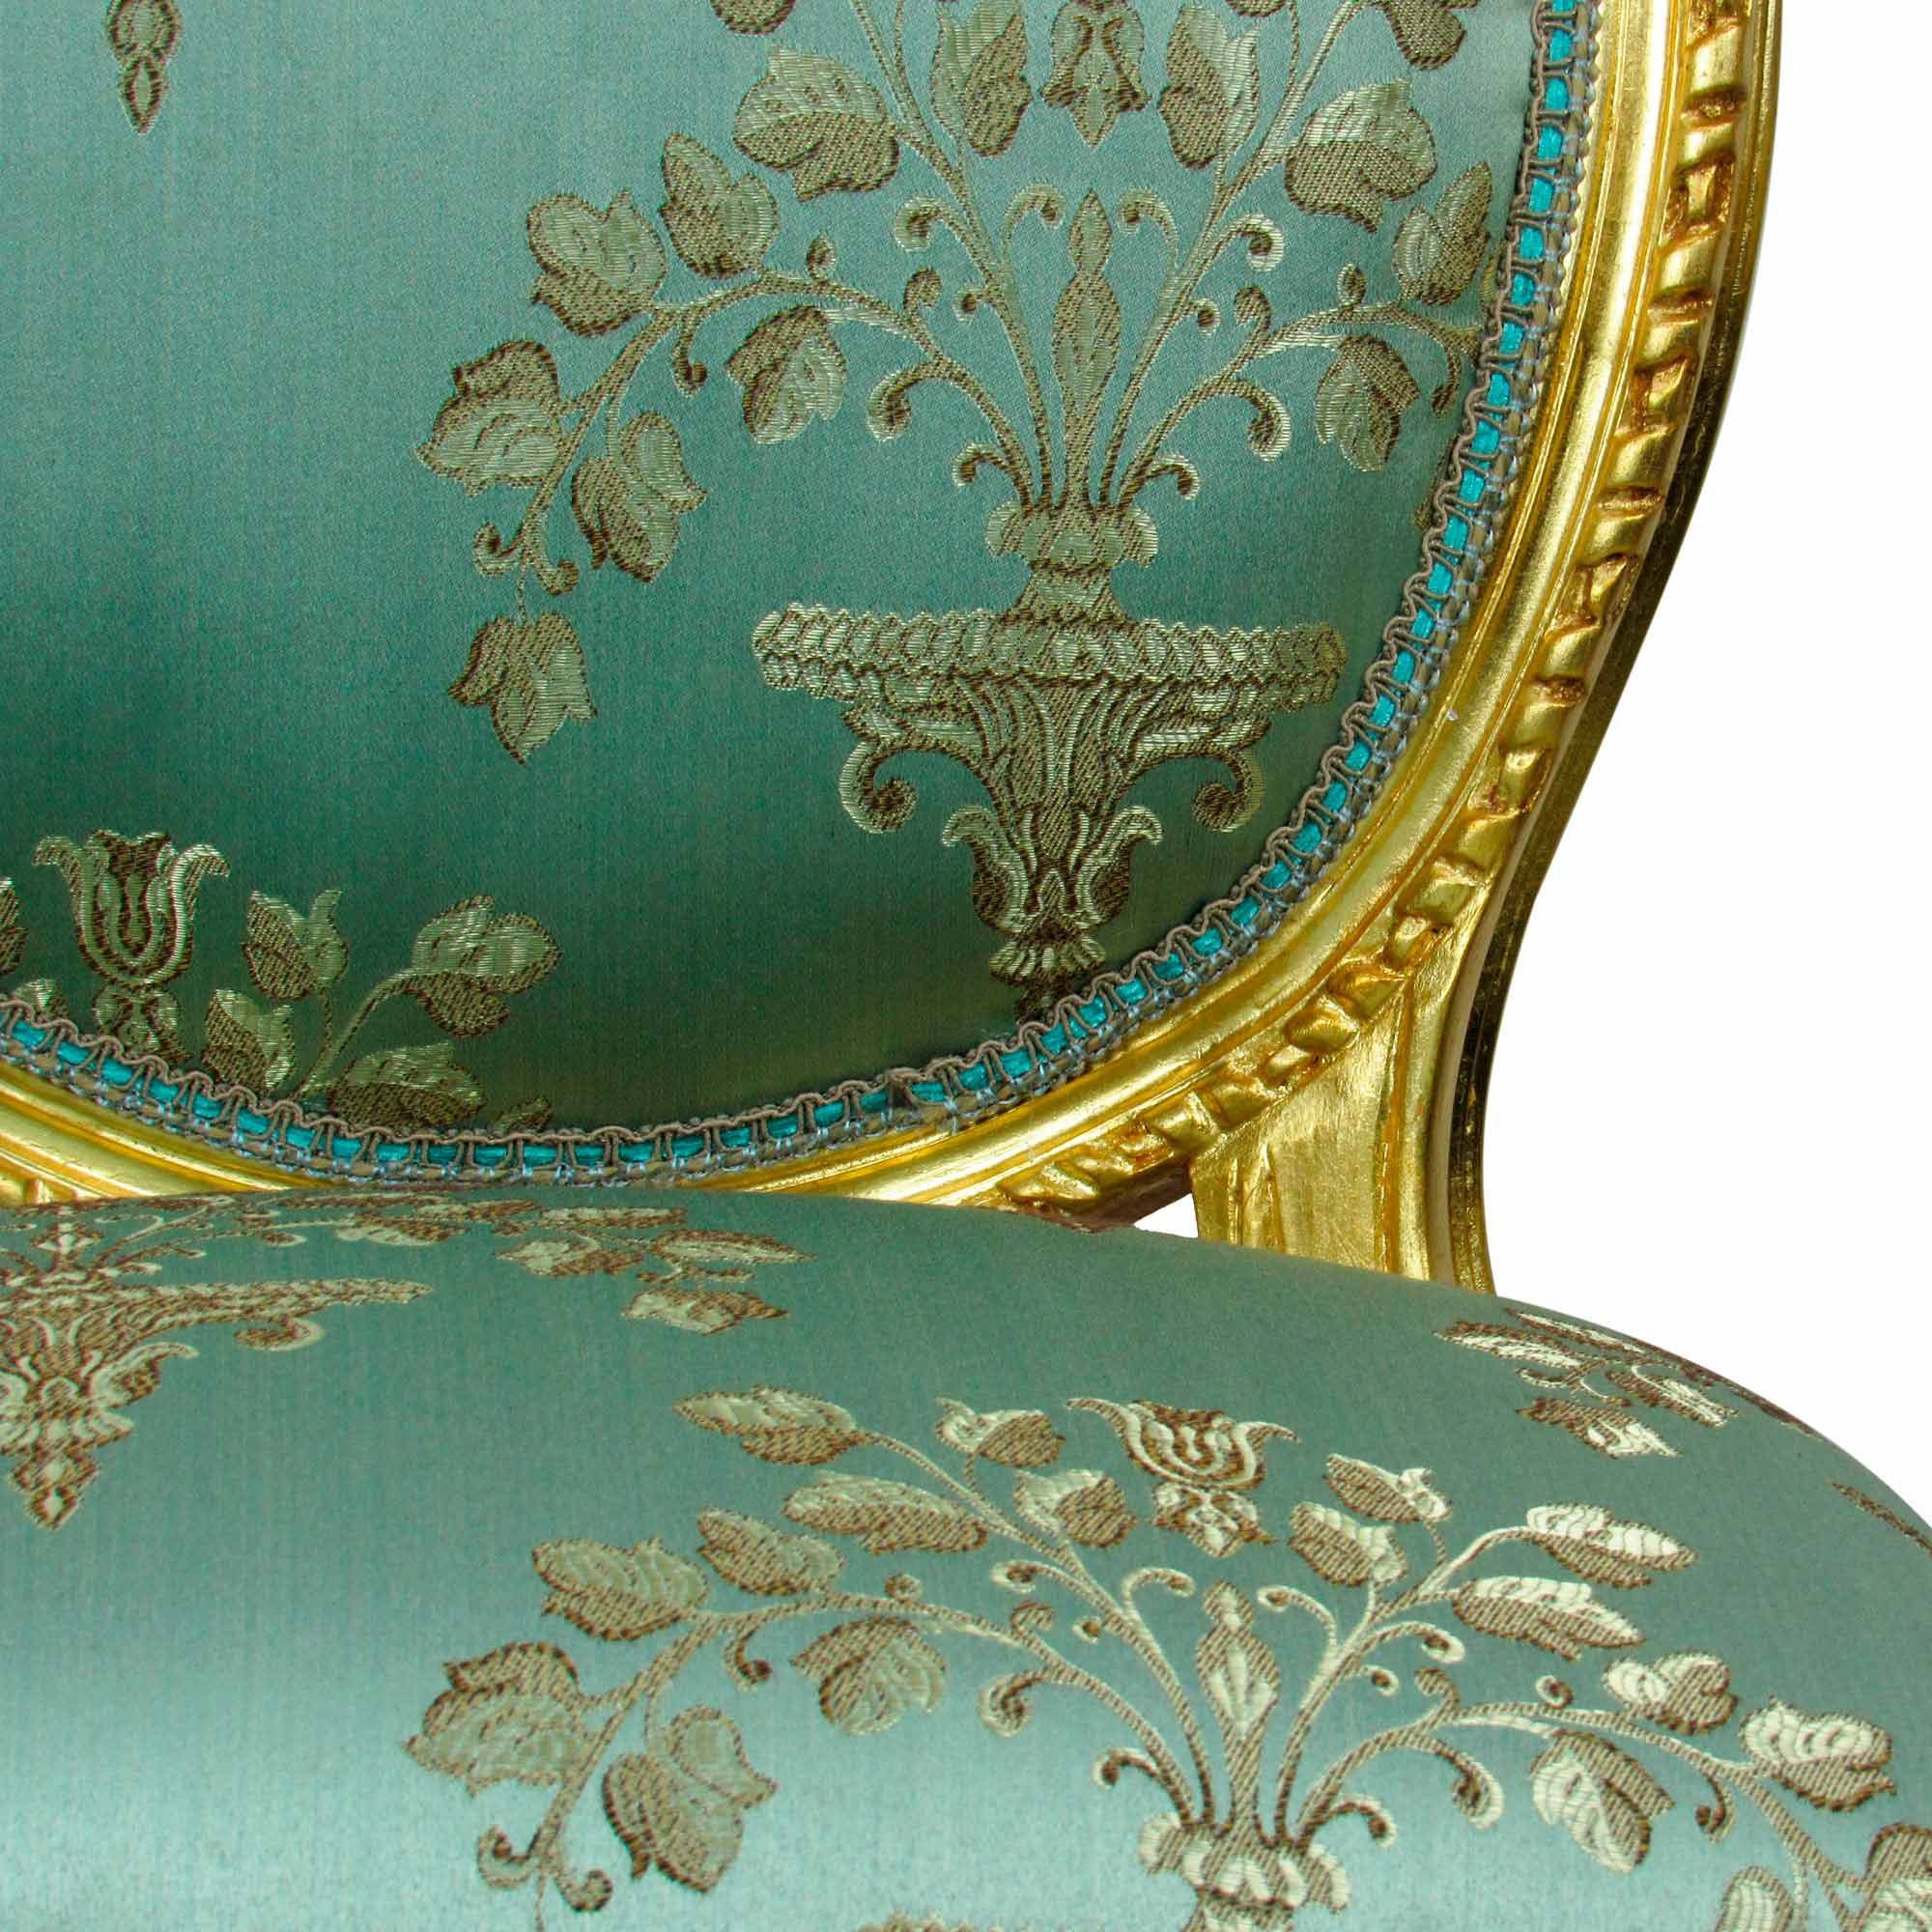 Cadeira Clássica Medalhão cor Azul Tifanny - Cadeira de Madeira com Detalhes em Acabamento - Estilo  - 8